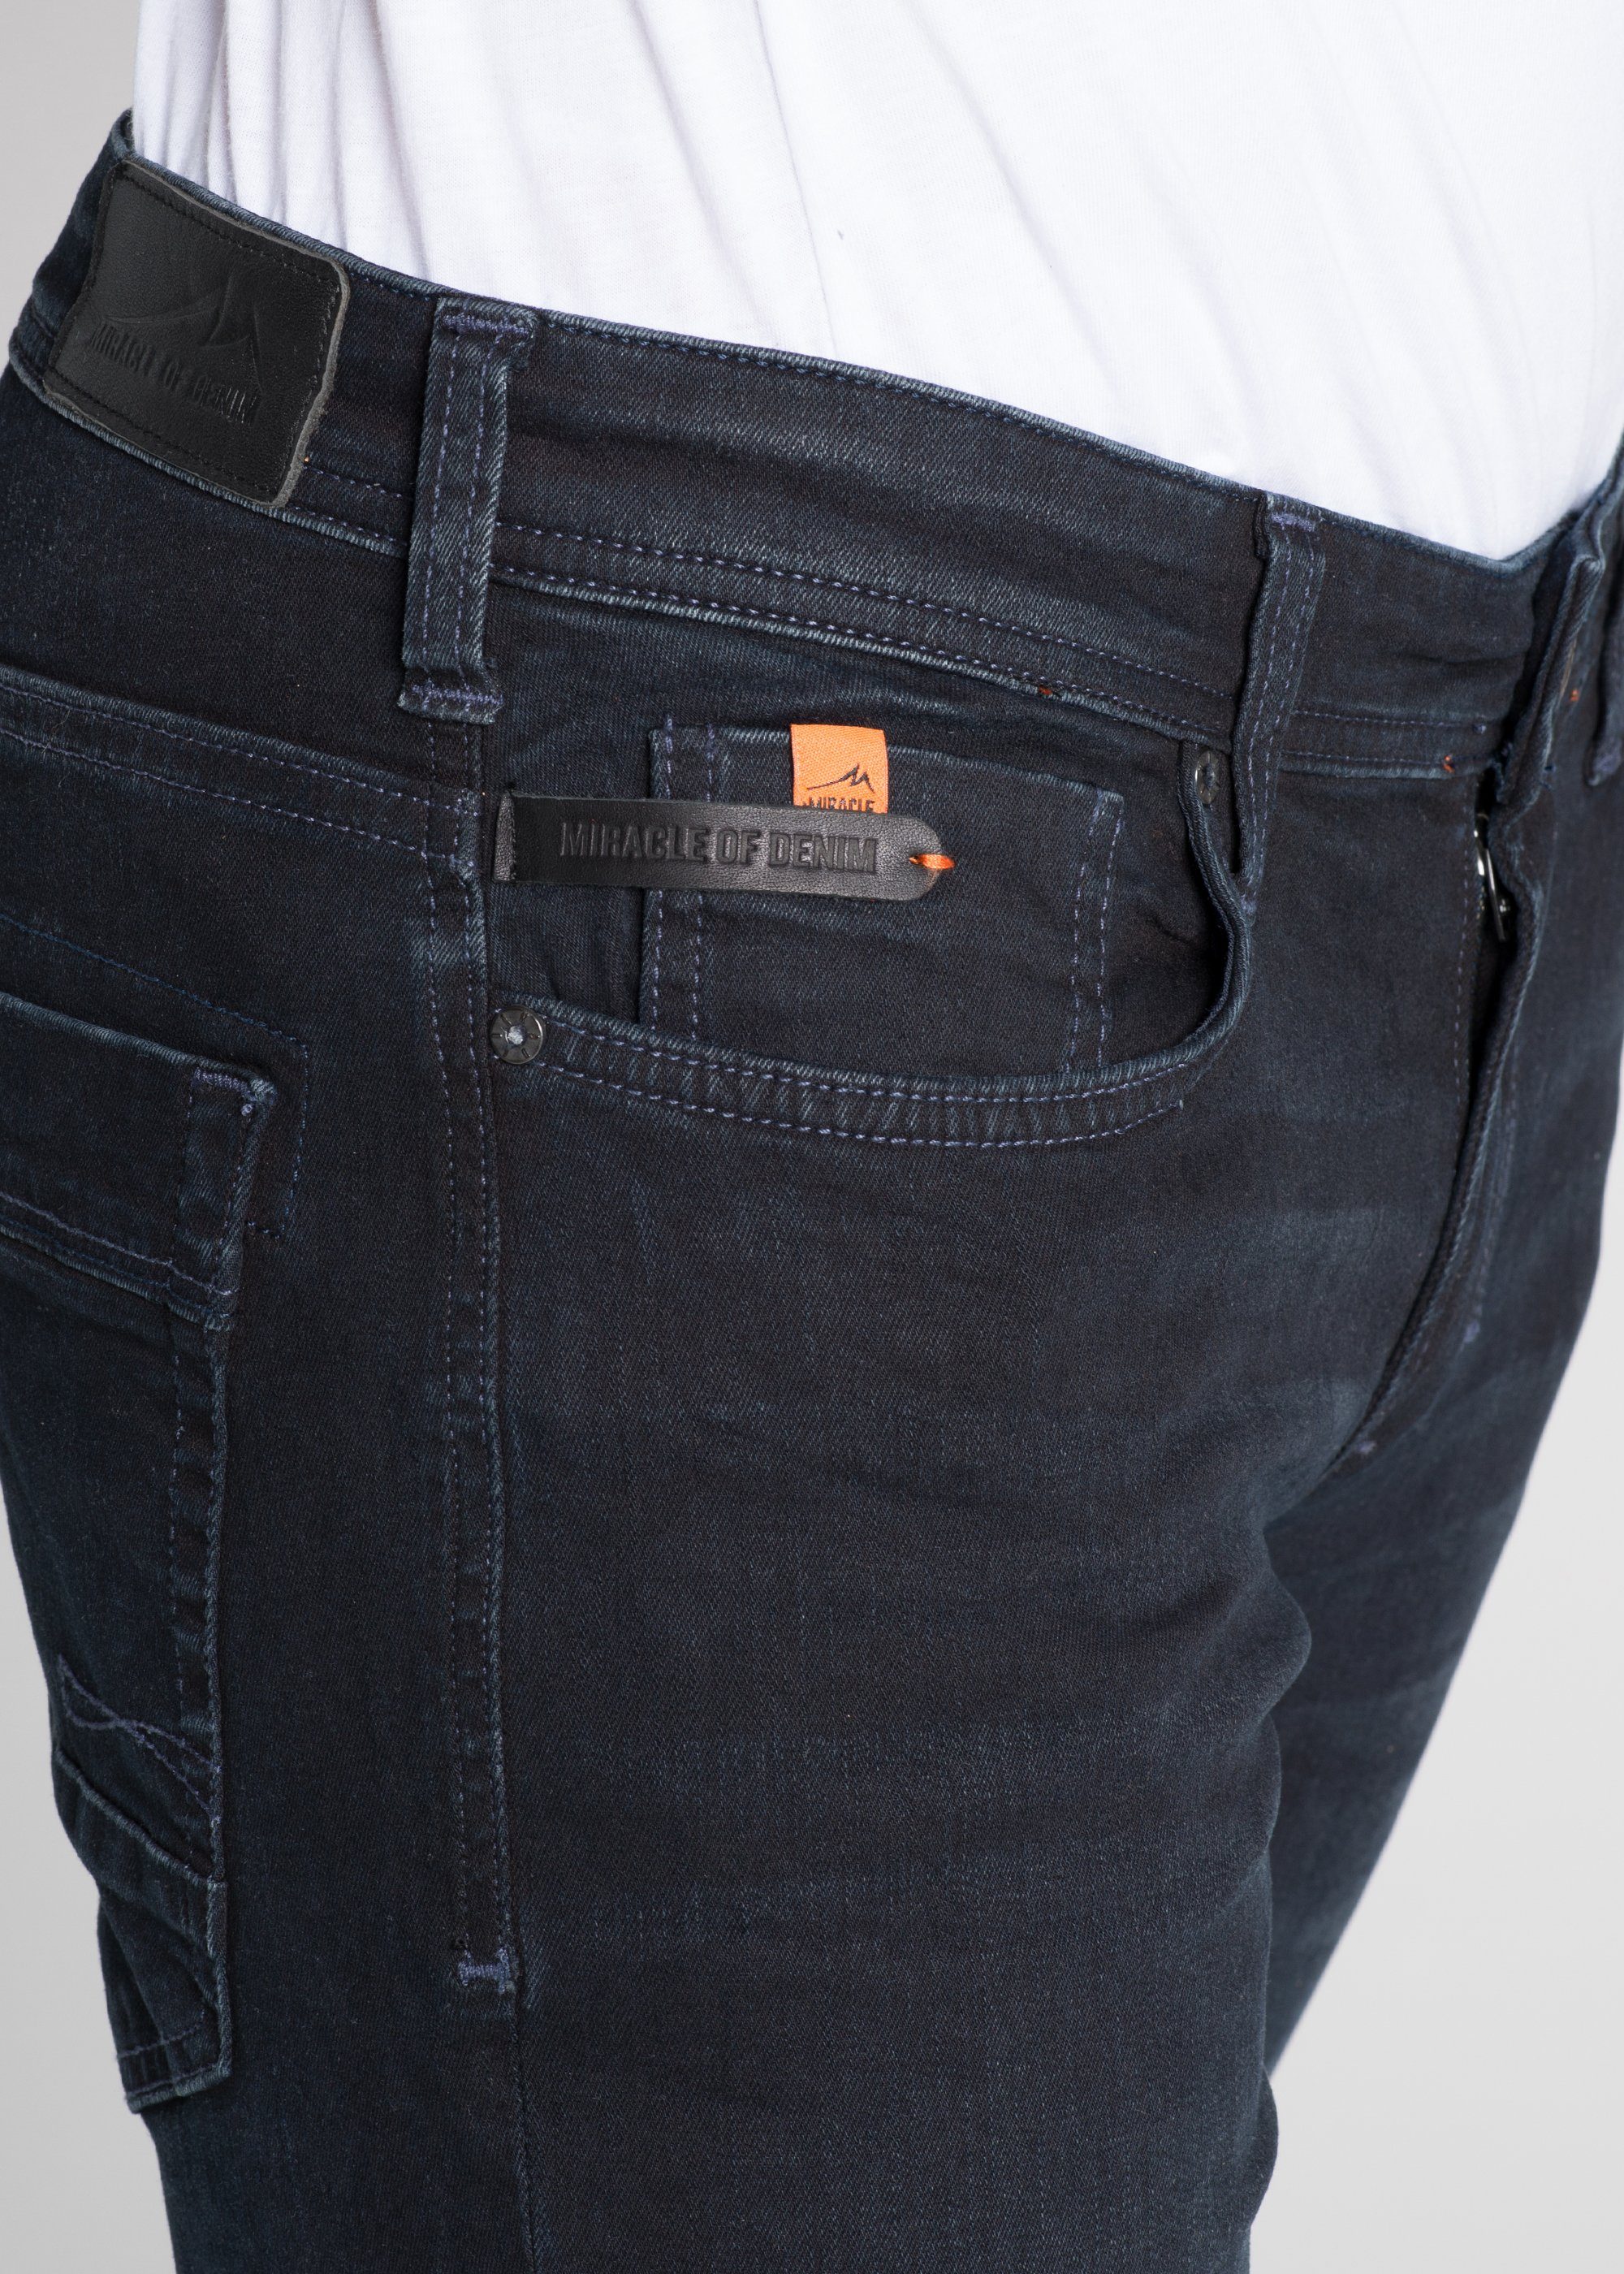 JEANS Miracle 5-Pocket-Jeans Denim AU19-1009.2961 numado blue THOMAS MOD NOS of